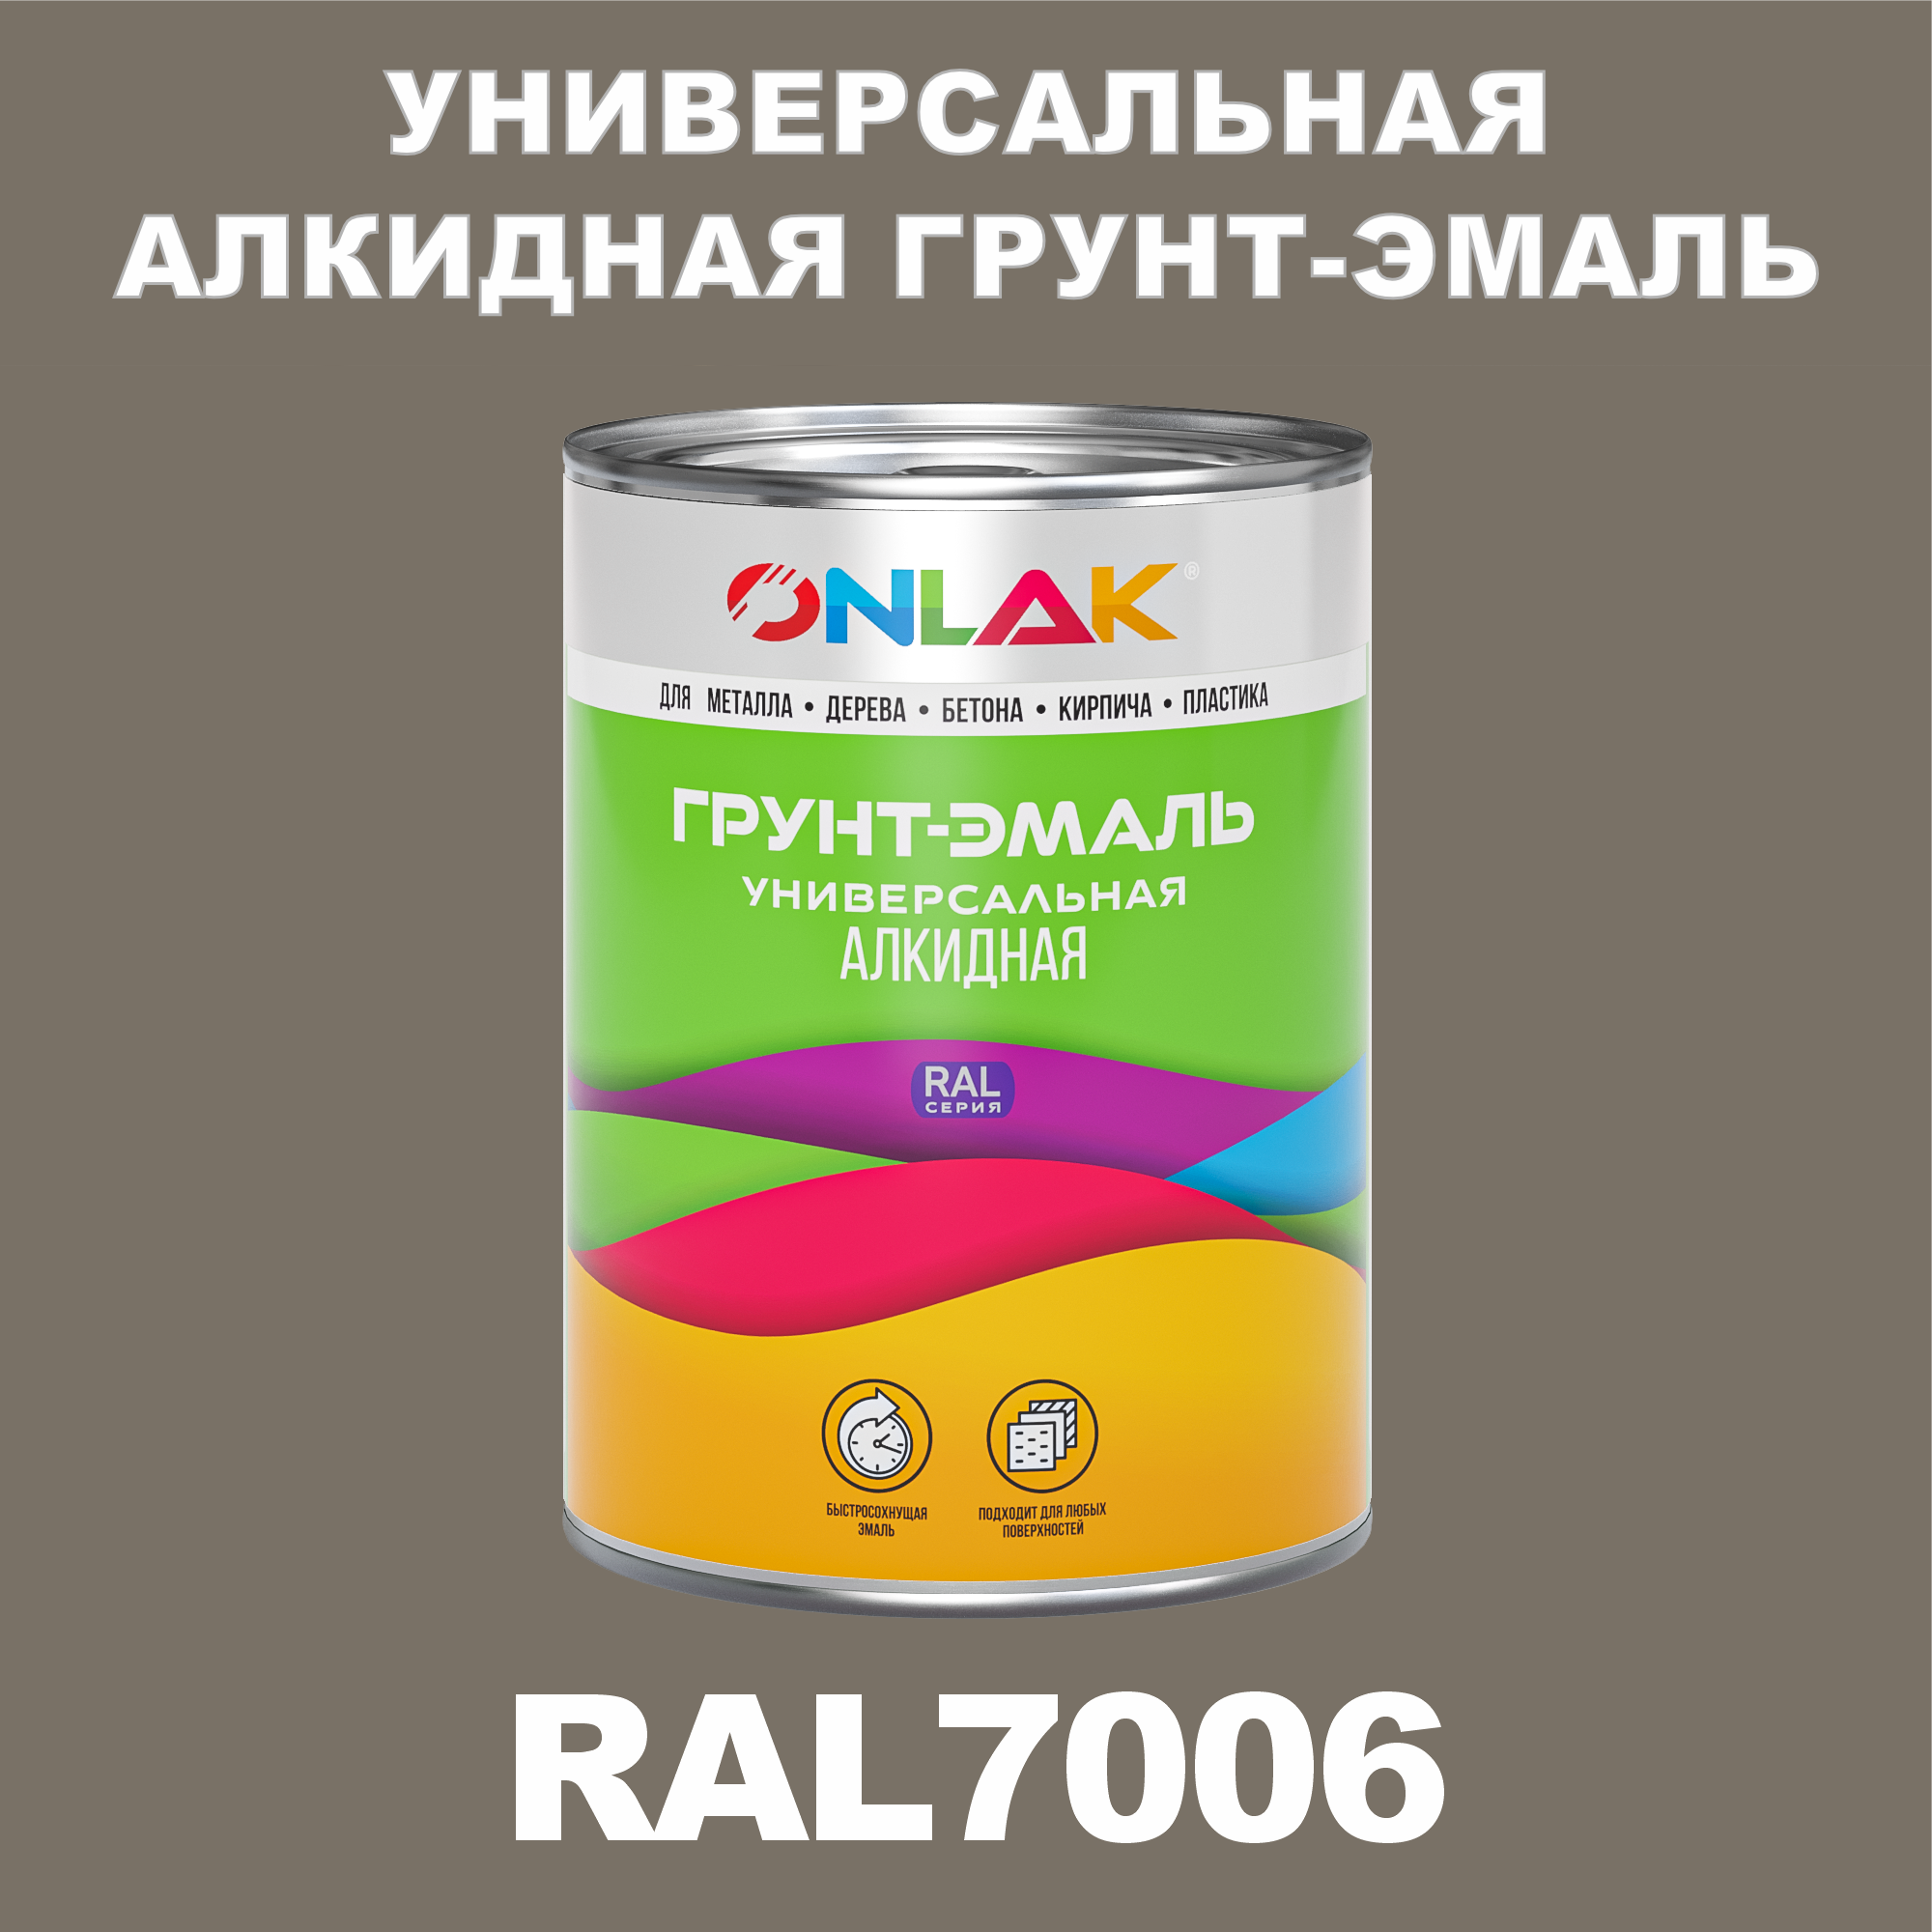 Грунт-эмаль ONLAK 1К RAL7006 антикоррозионная алкидная по металлу по ржавчине 1 кг грунт эмаль yollo по ржавчине алкидная синяя 0 9 кг